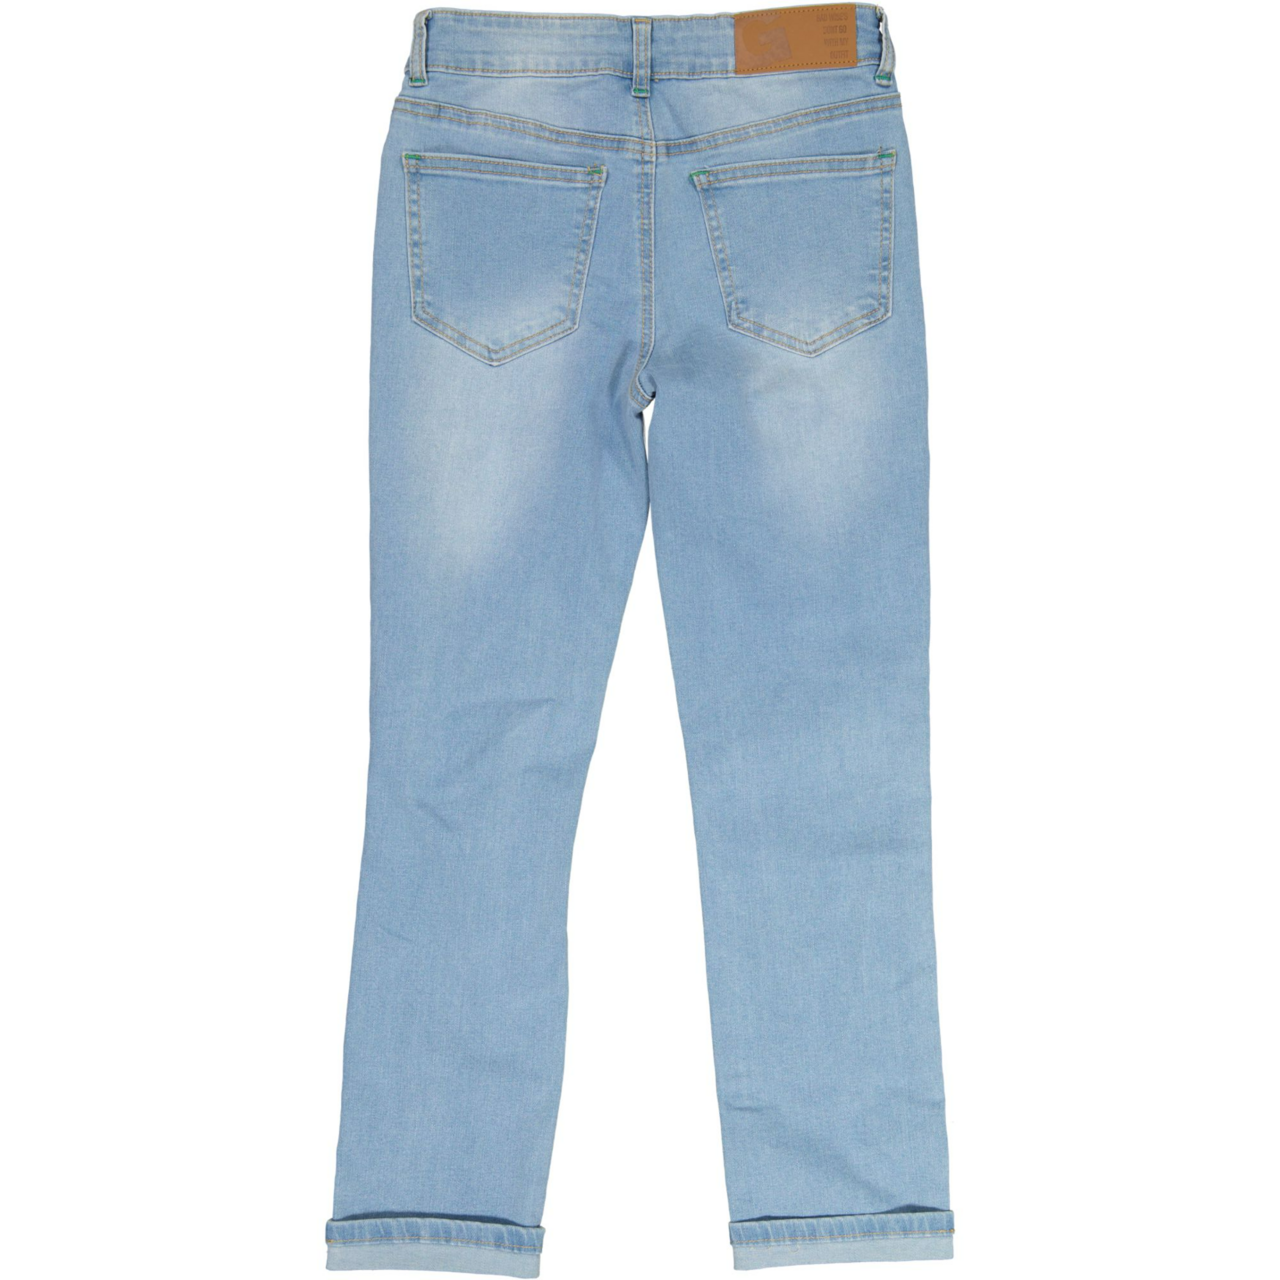 Unisex loose fit jeans Denim blue wash 98/104